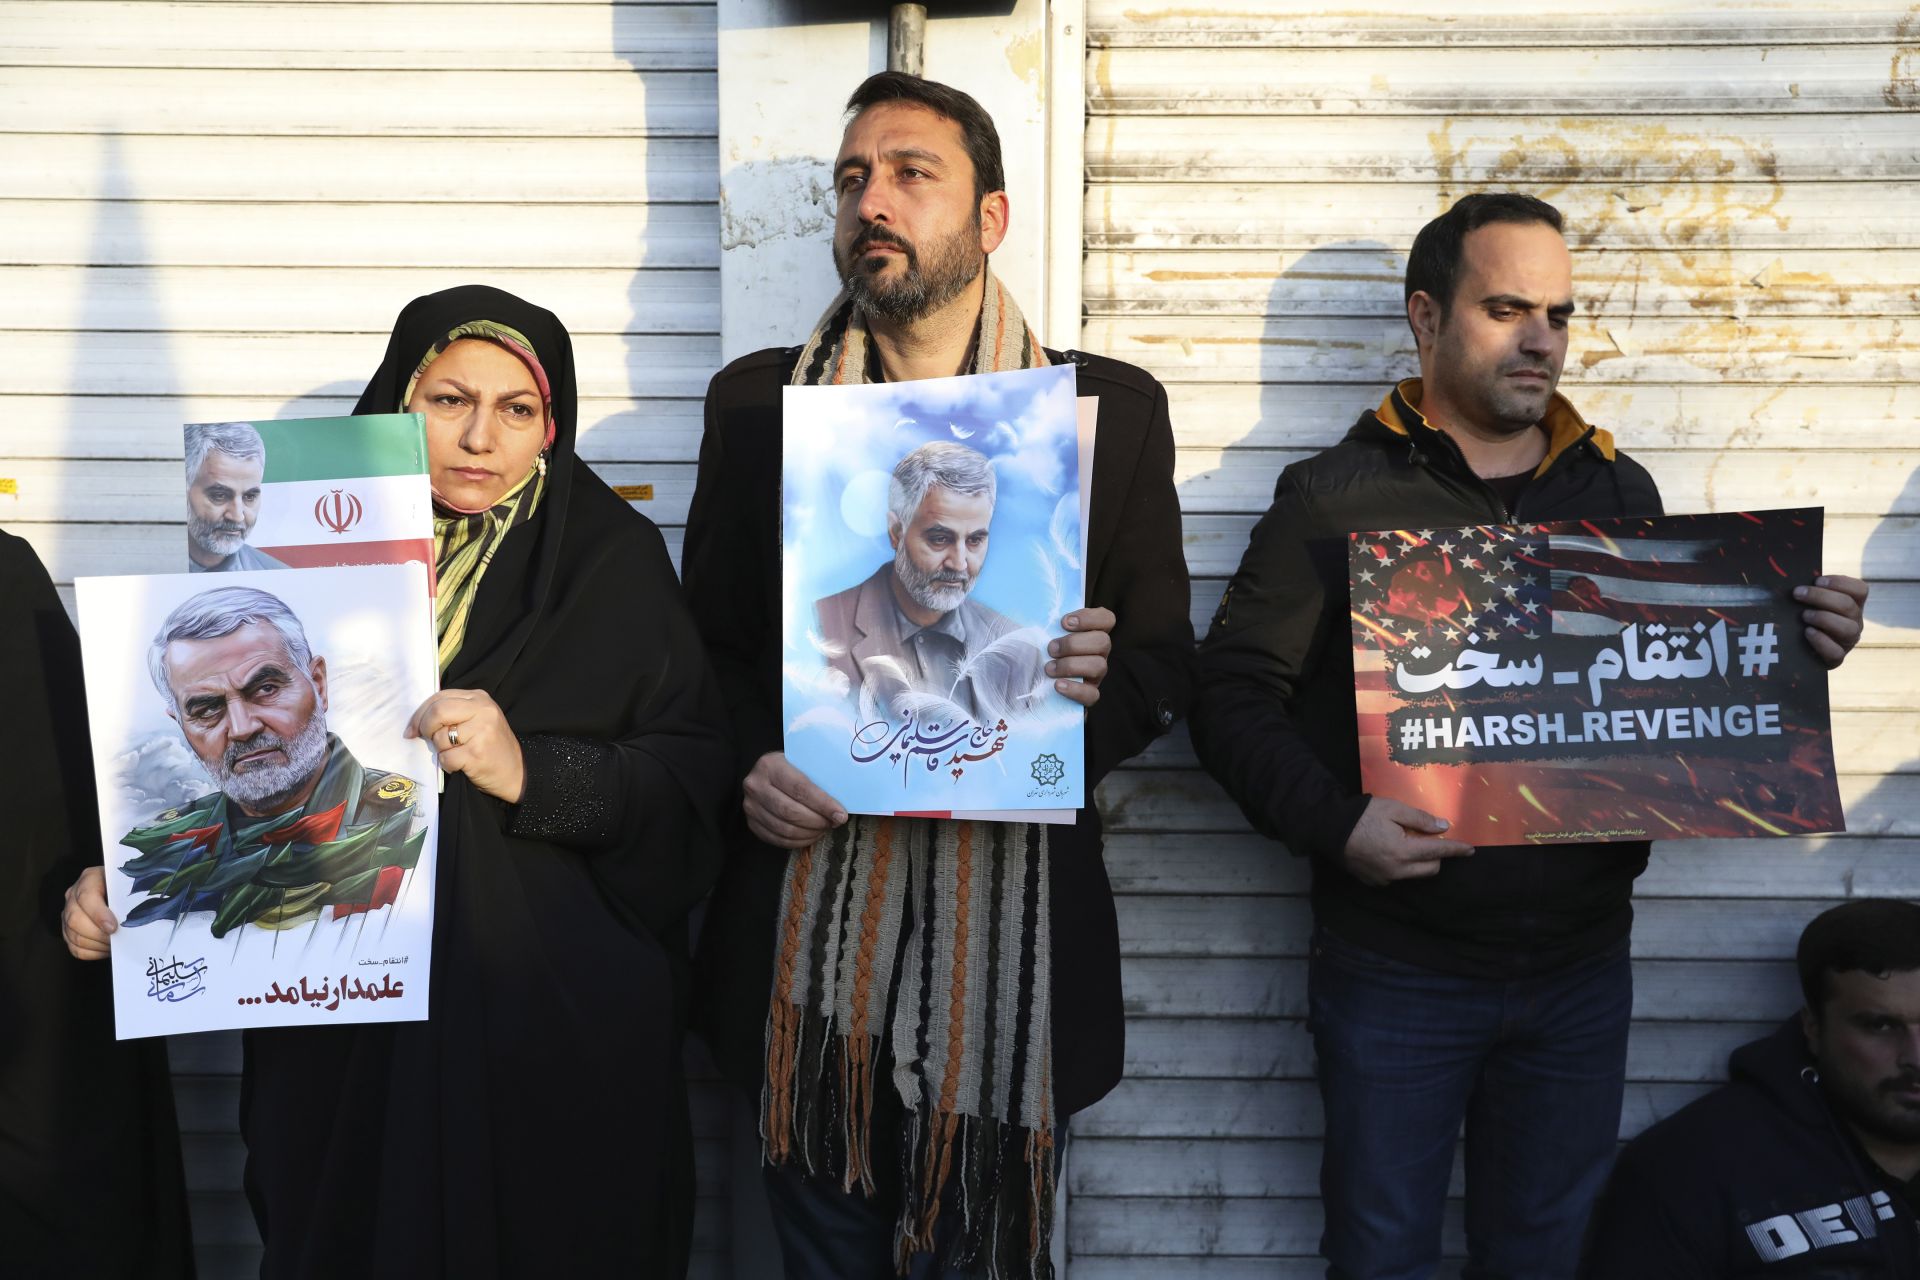 С плакати на английски език иранци призоваваха да бъде отмъстено за смъртта на генерала